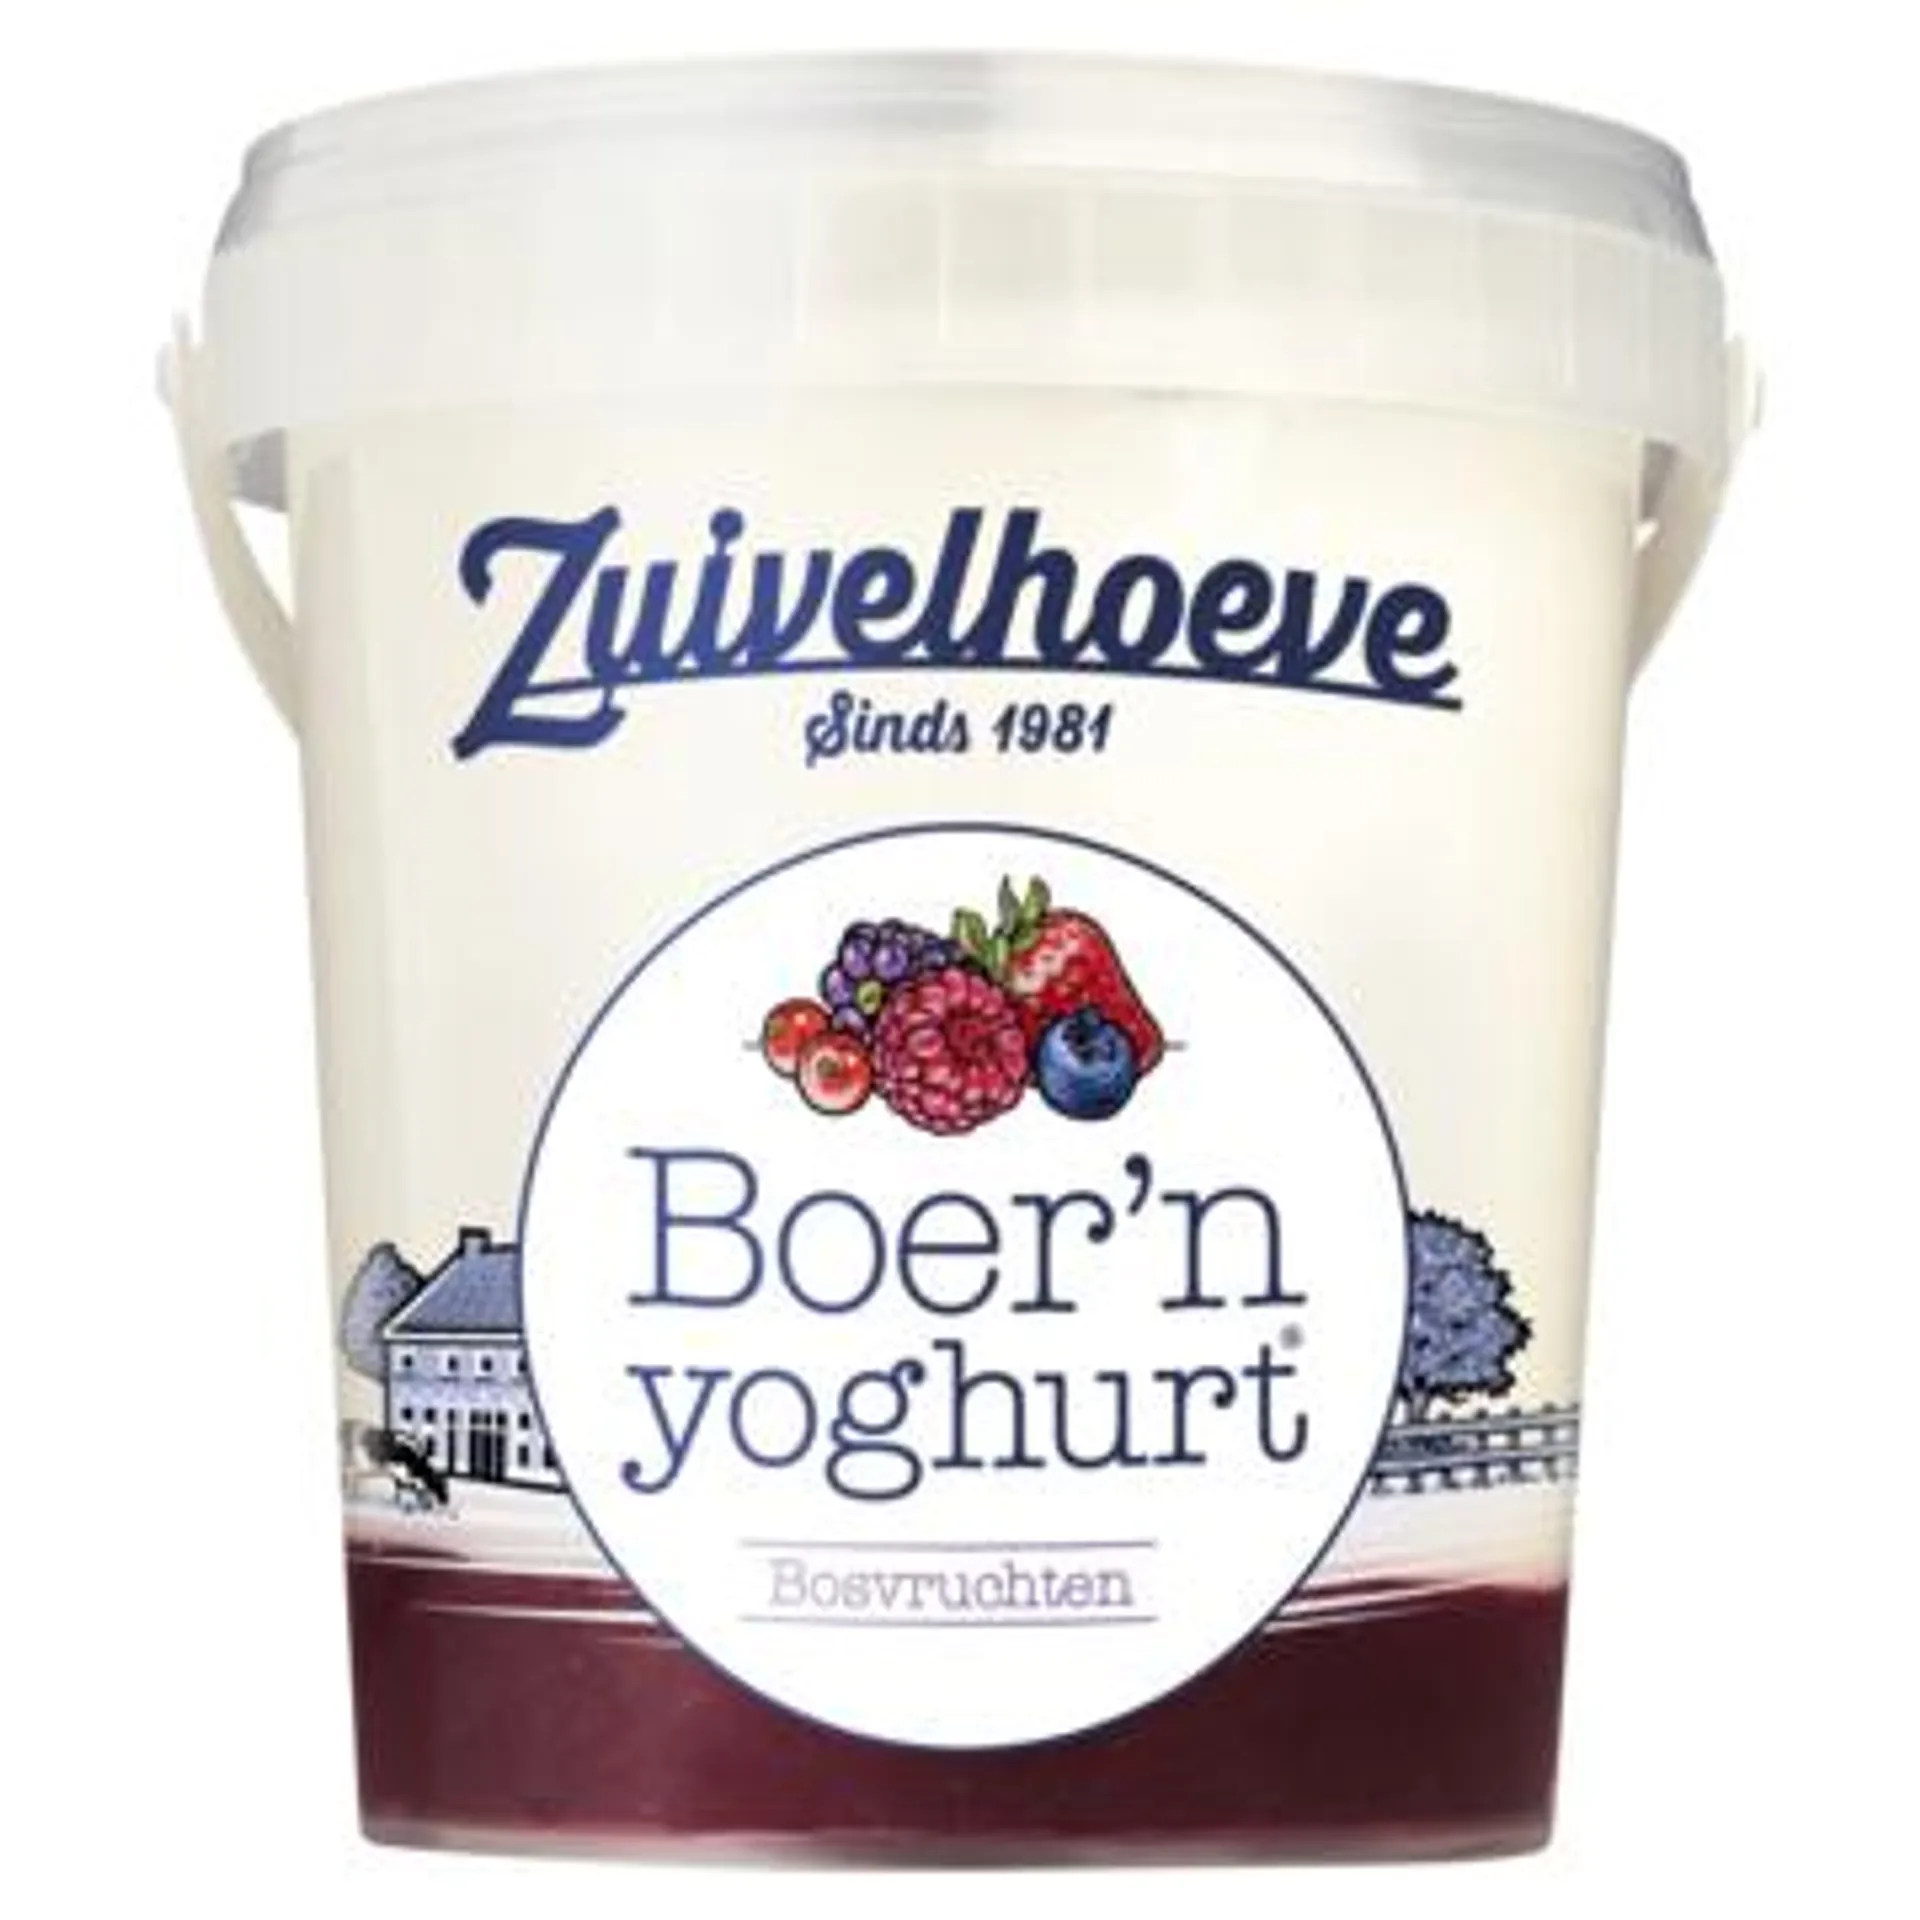 Zuivelhoeve Boer'n yoghurt® Bosvruchten 750g